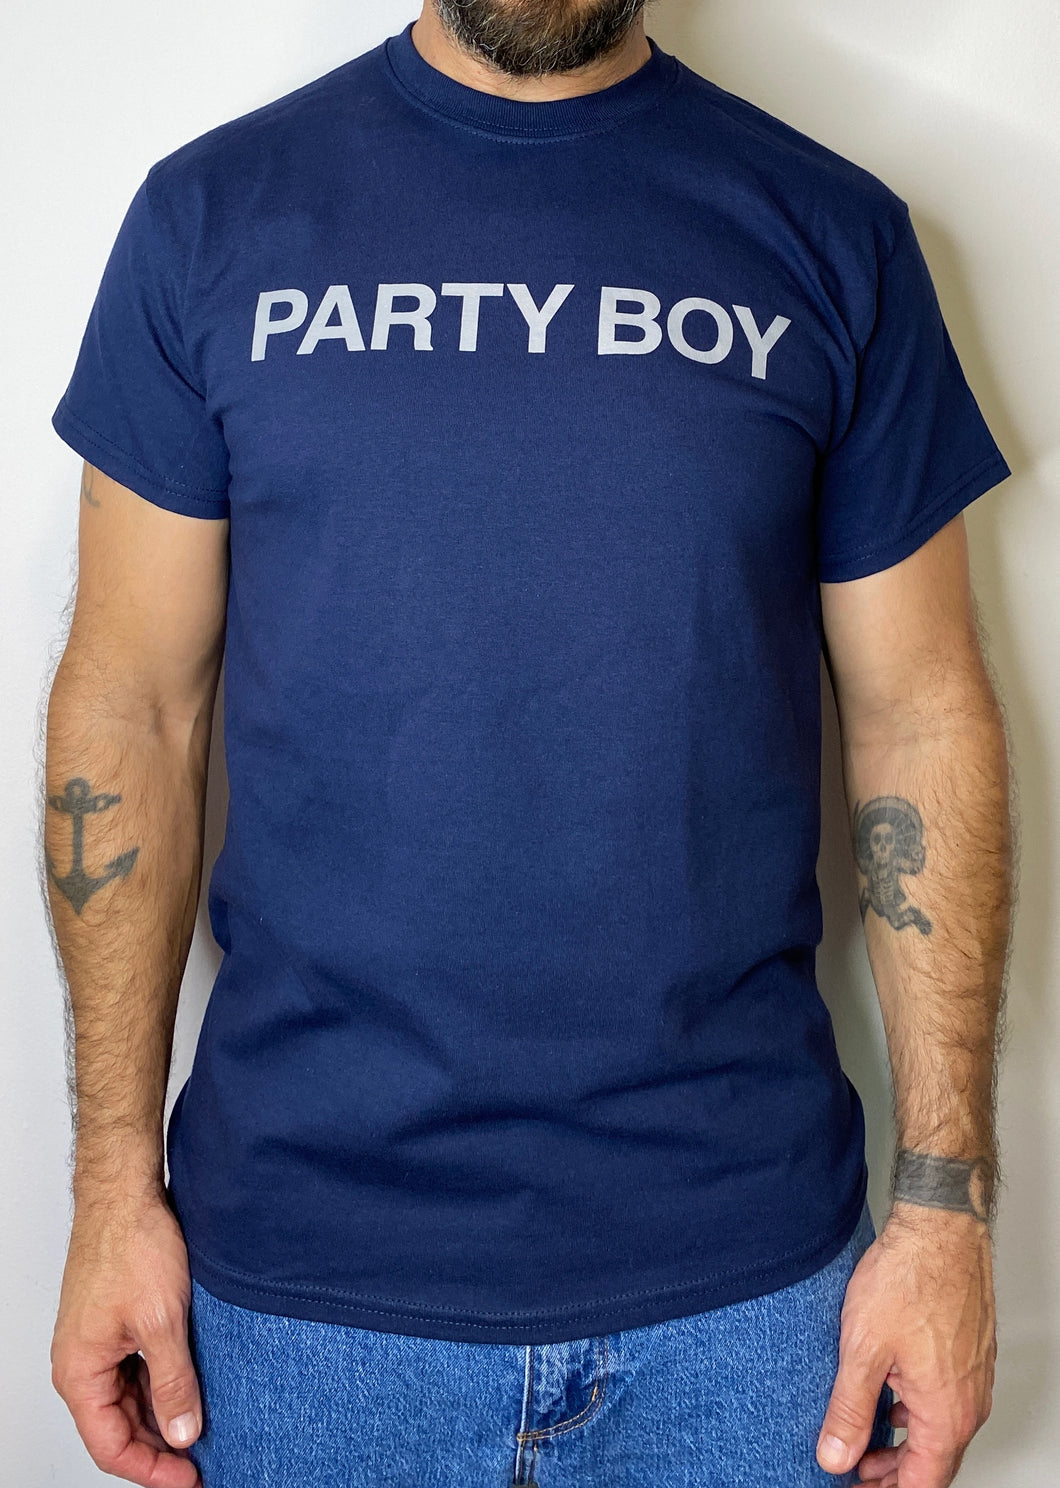 NEU! Party Boy T-Shirt NAVY